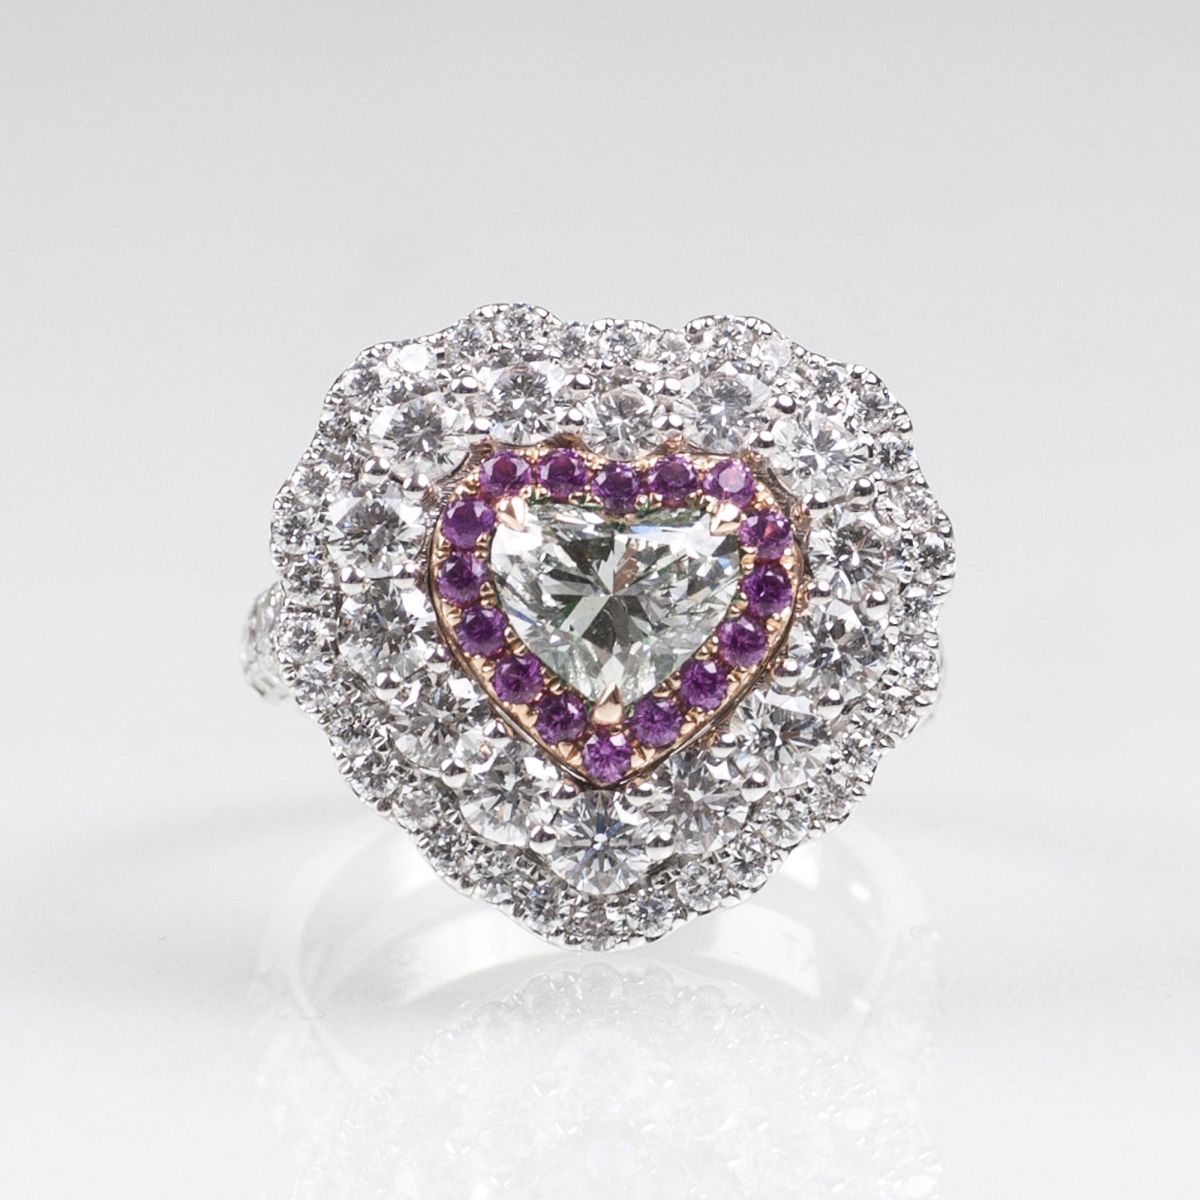 A Light Green Fancy Diamond Ring in Heartshape - image 2